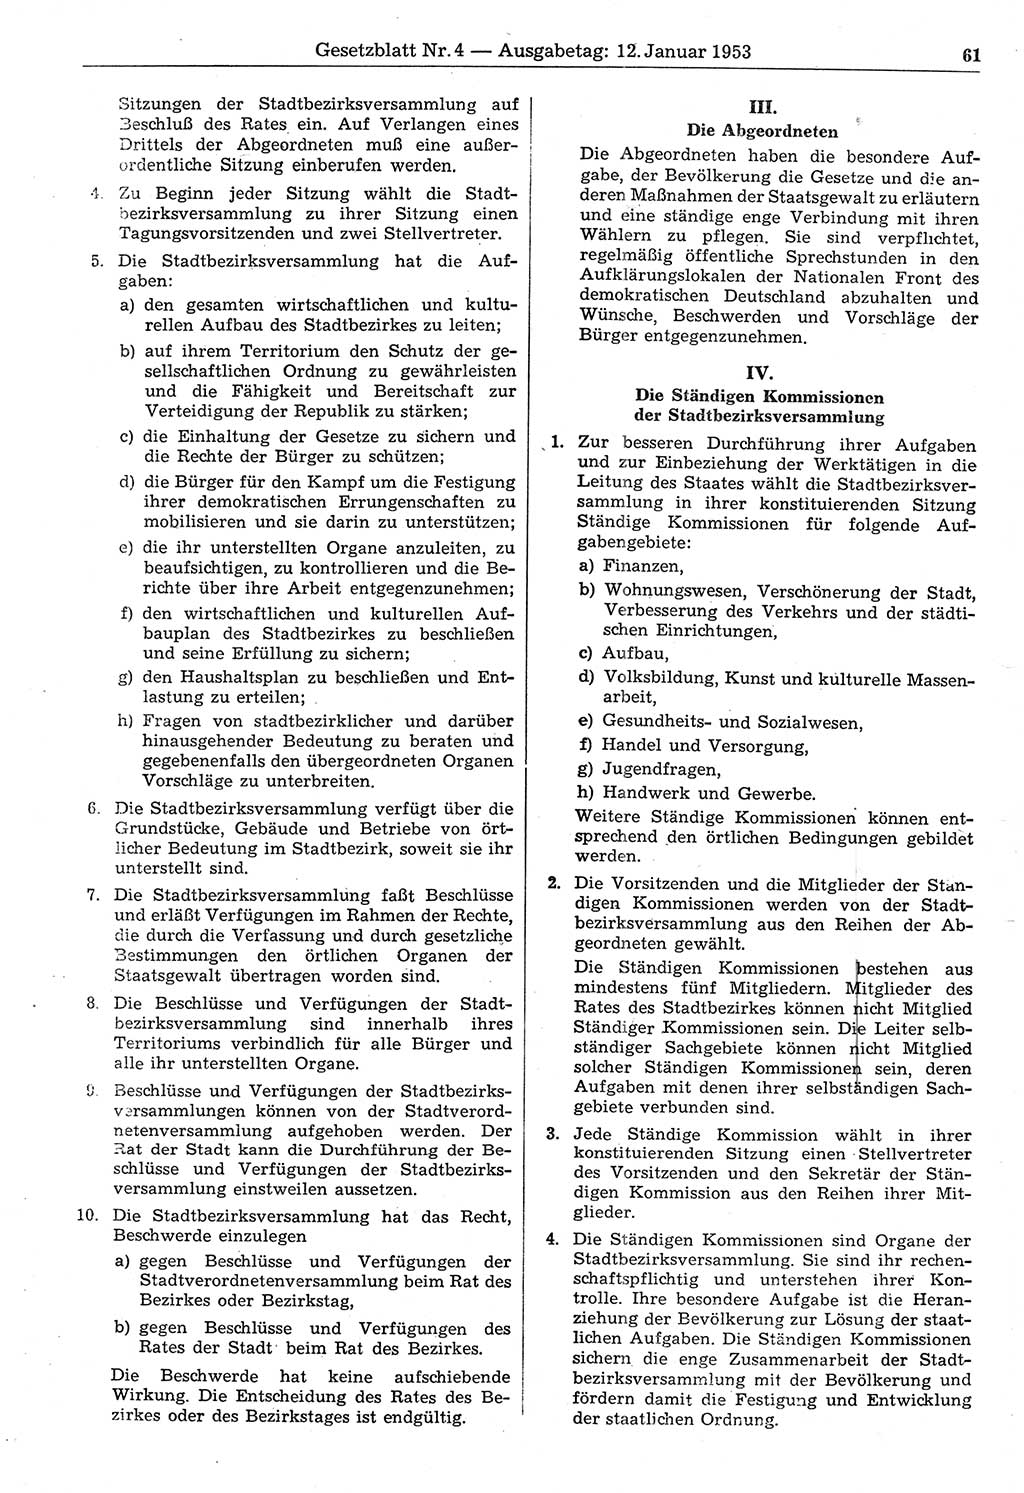 Gesetzblatt (GBl.) der Deutschen Demokratischen Republik (DDR) 1953, Seite 61 (GBl. DDR 1953, S. 61)